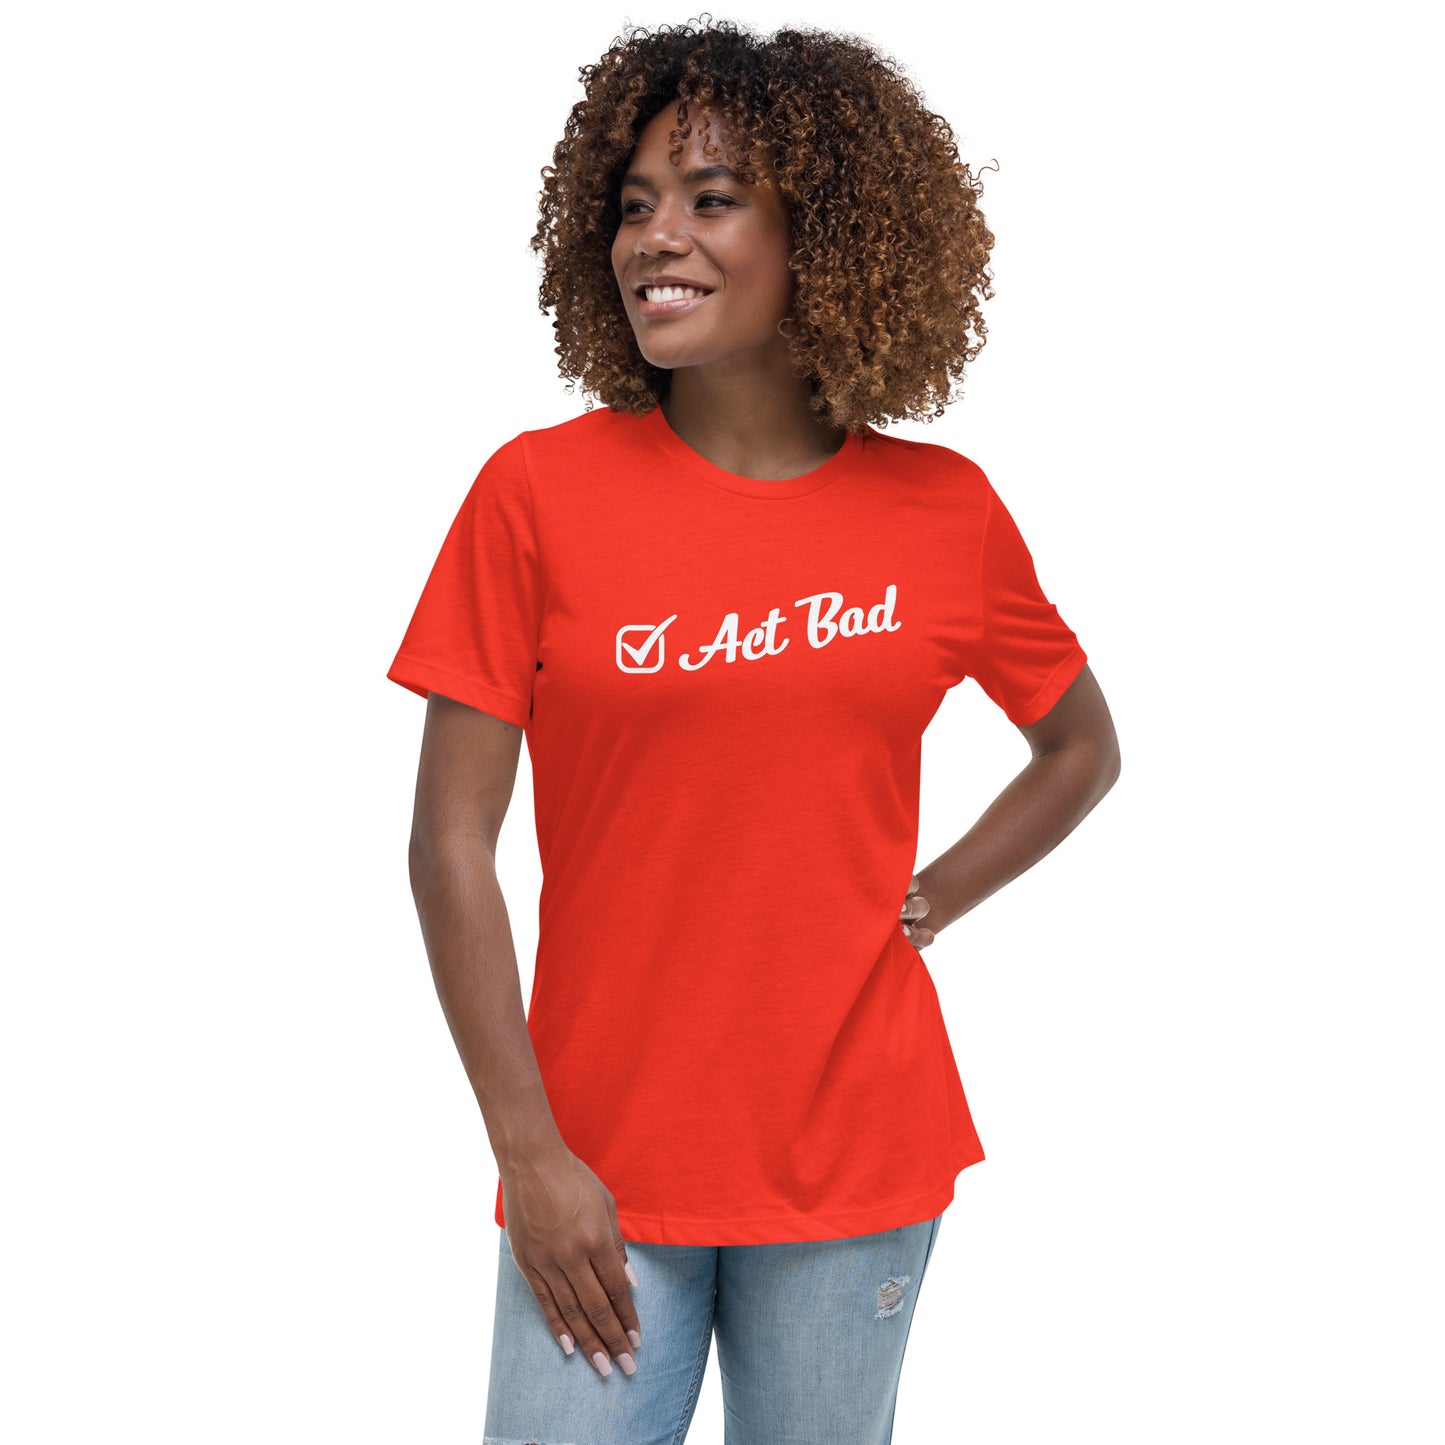 "Act Bad" Women’s T-Shirt